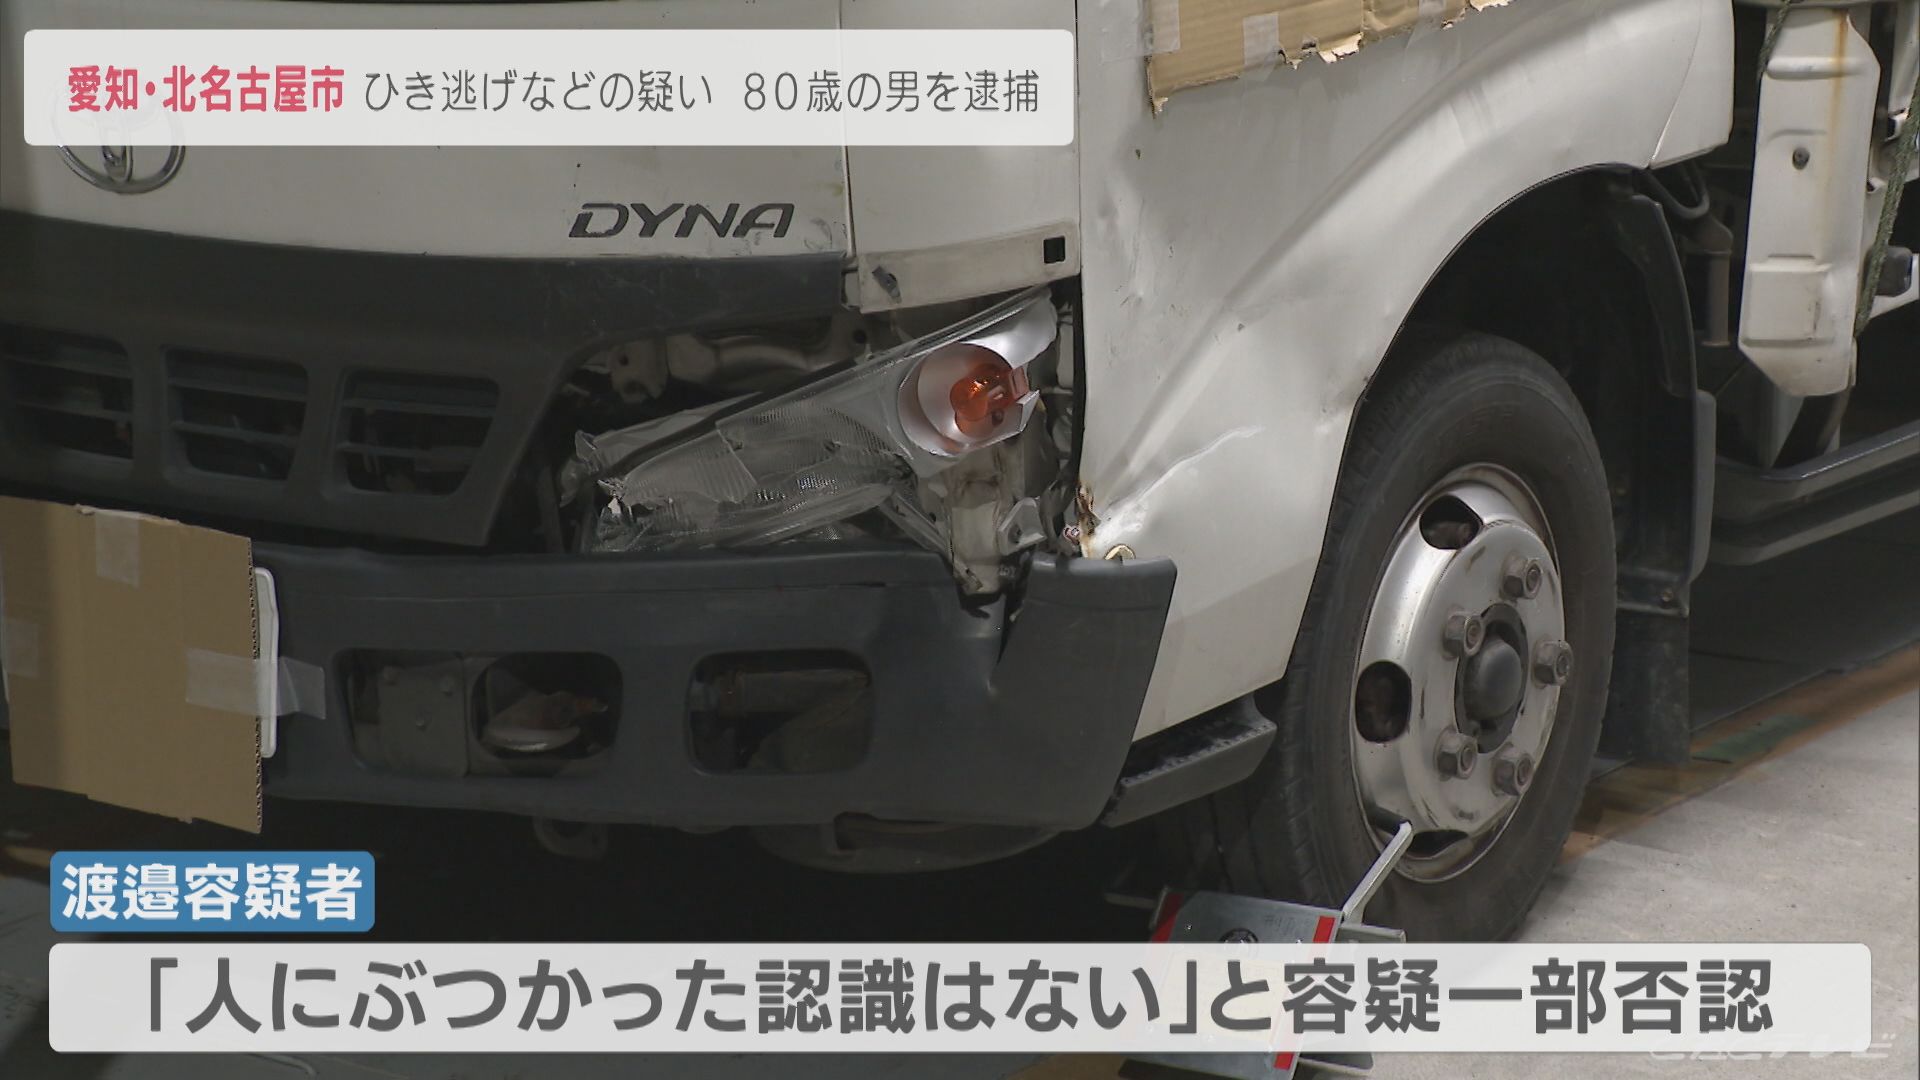 トラックのミラーを女性にぶつけ逃走　80歳の男をひき逃げの疑いで逮捕　愛知・北名古屋市